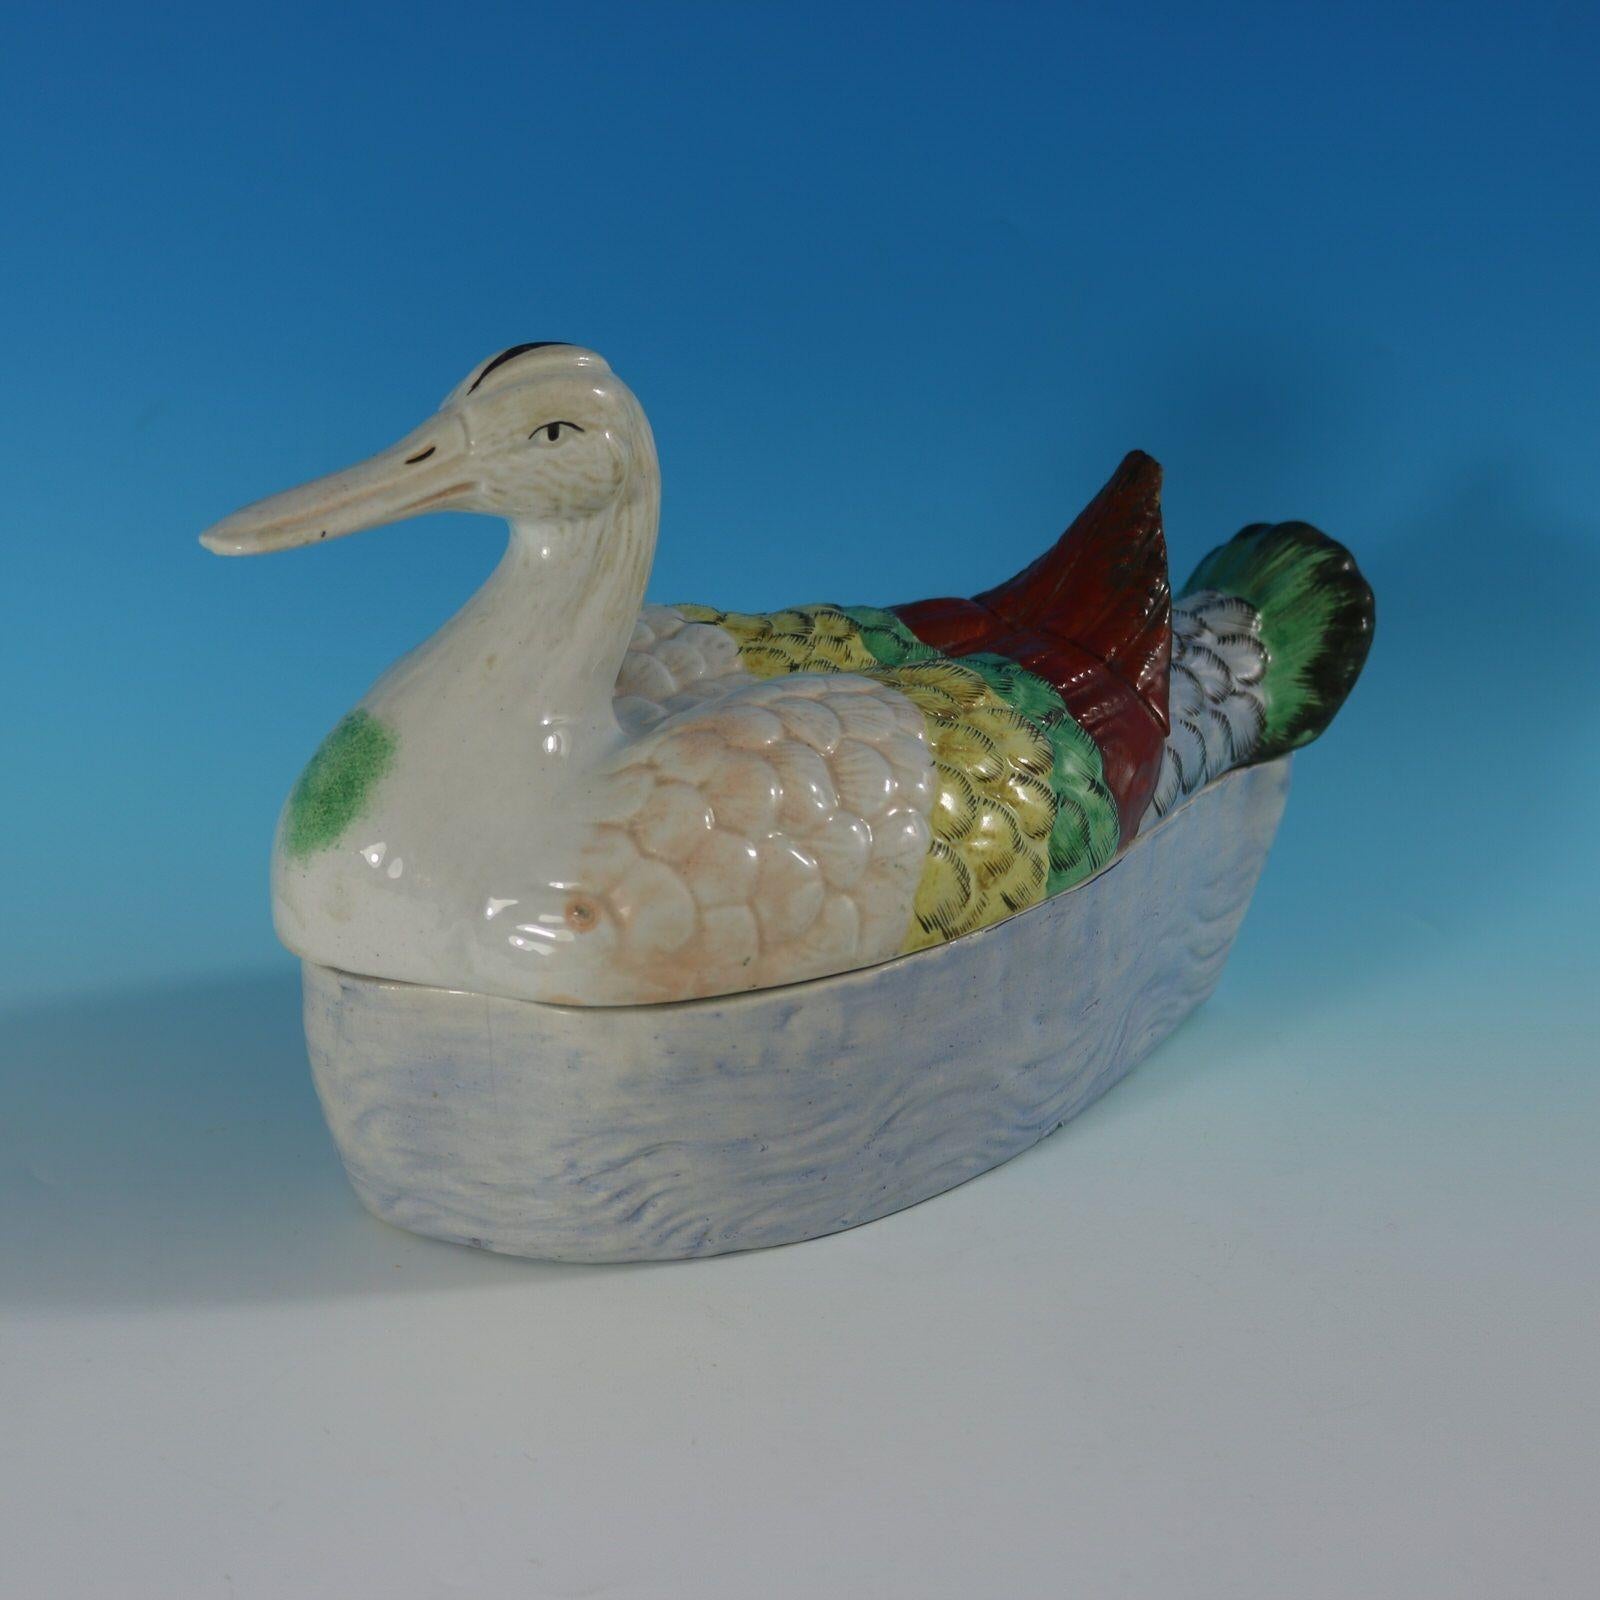 Soupière en poterie du Staffordshire avec couvercle qui représente un canard formant le couvercle, assis sur une base moulée avec un effet d'eau ondulante. La marque du fabricant, 